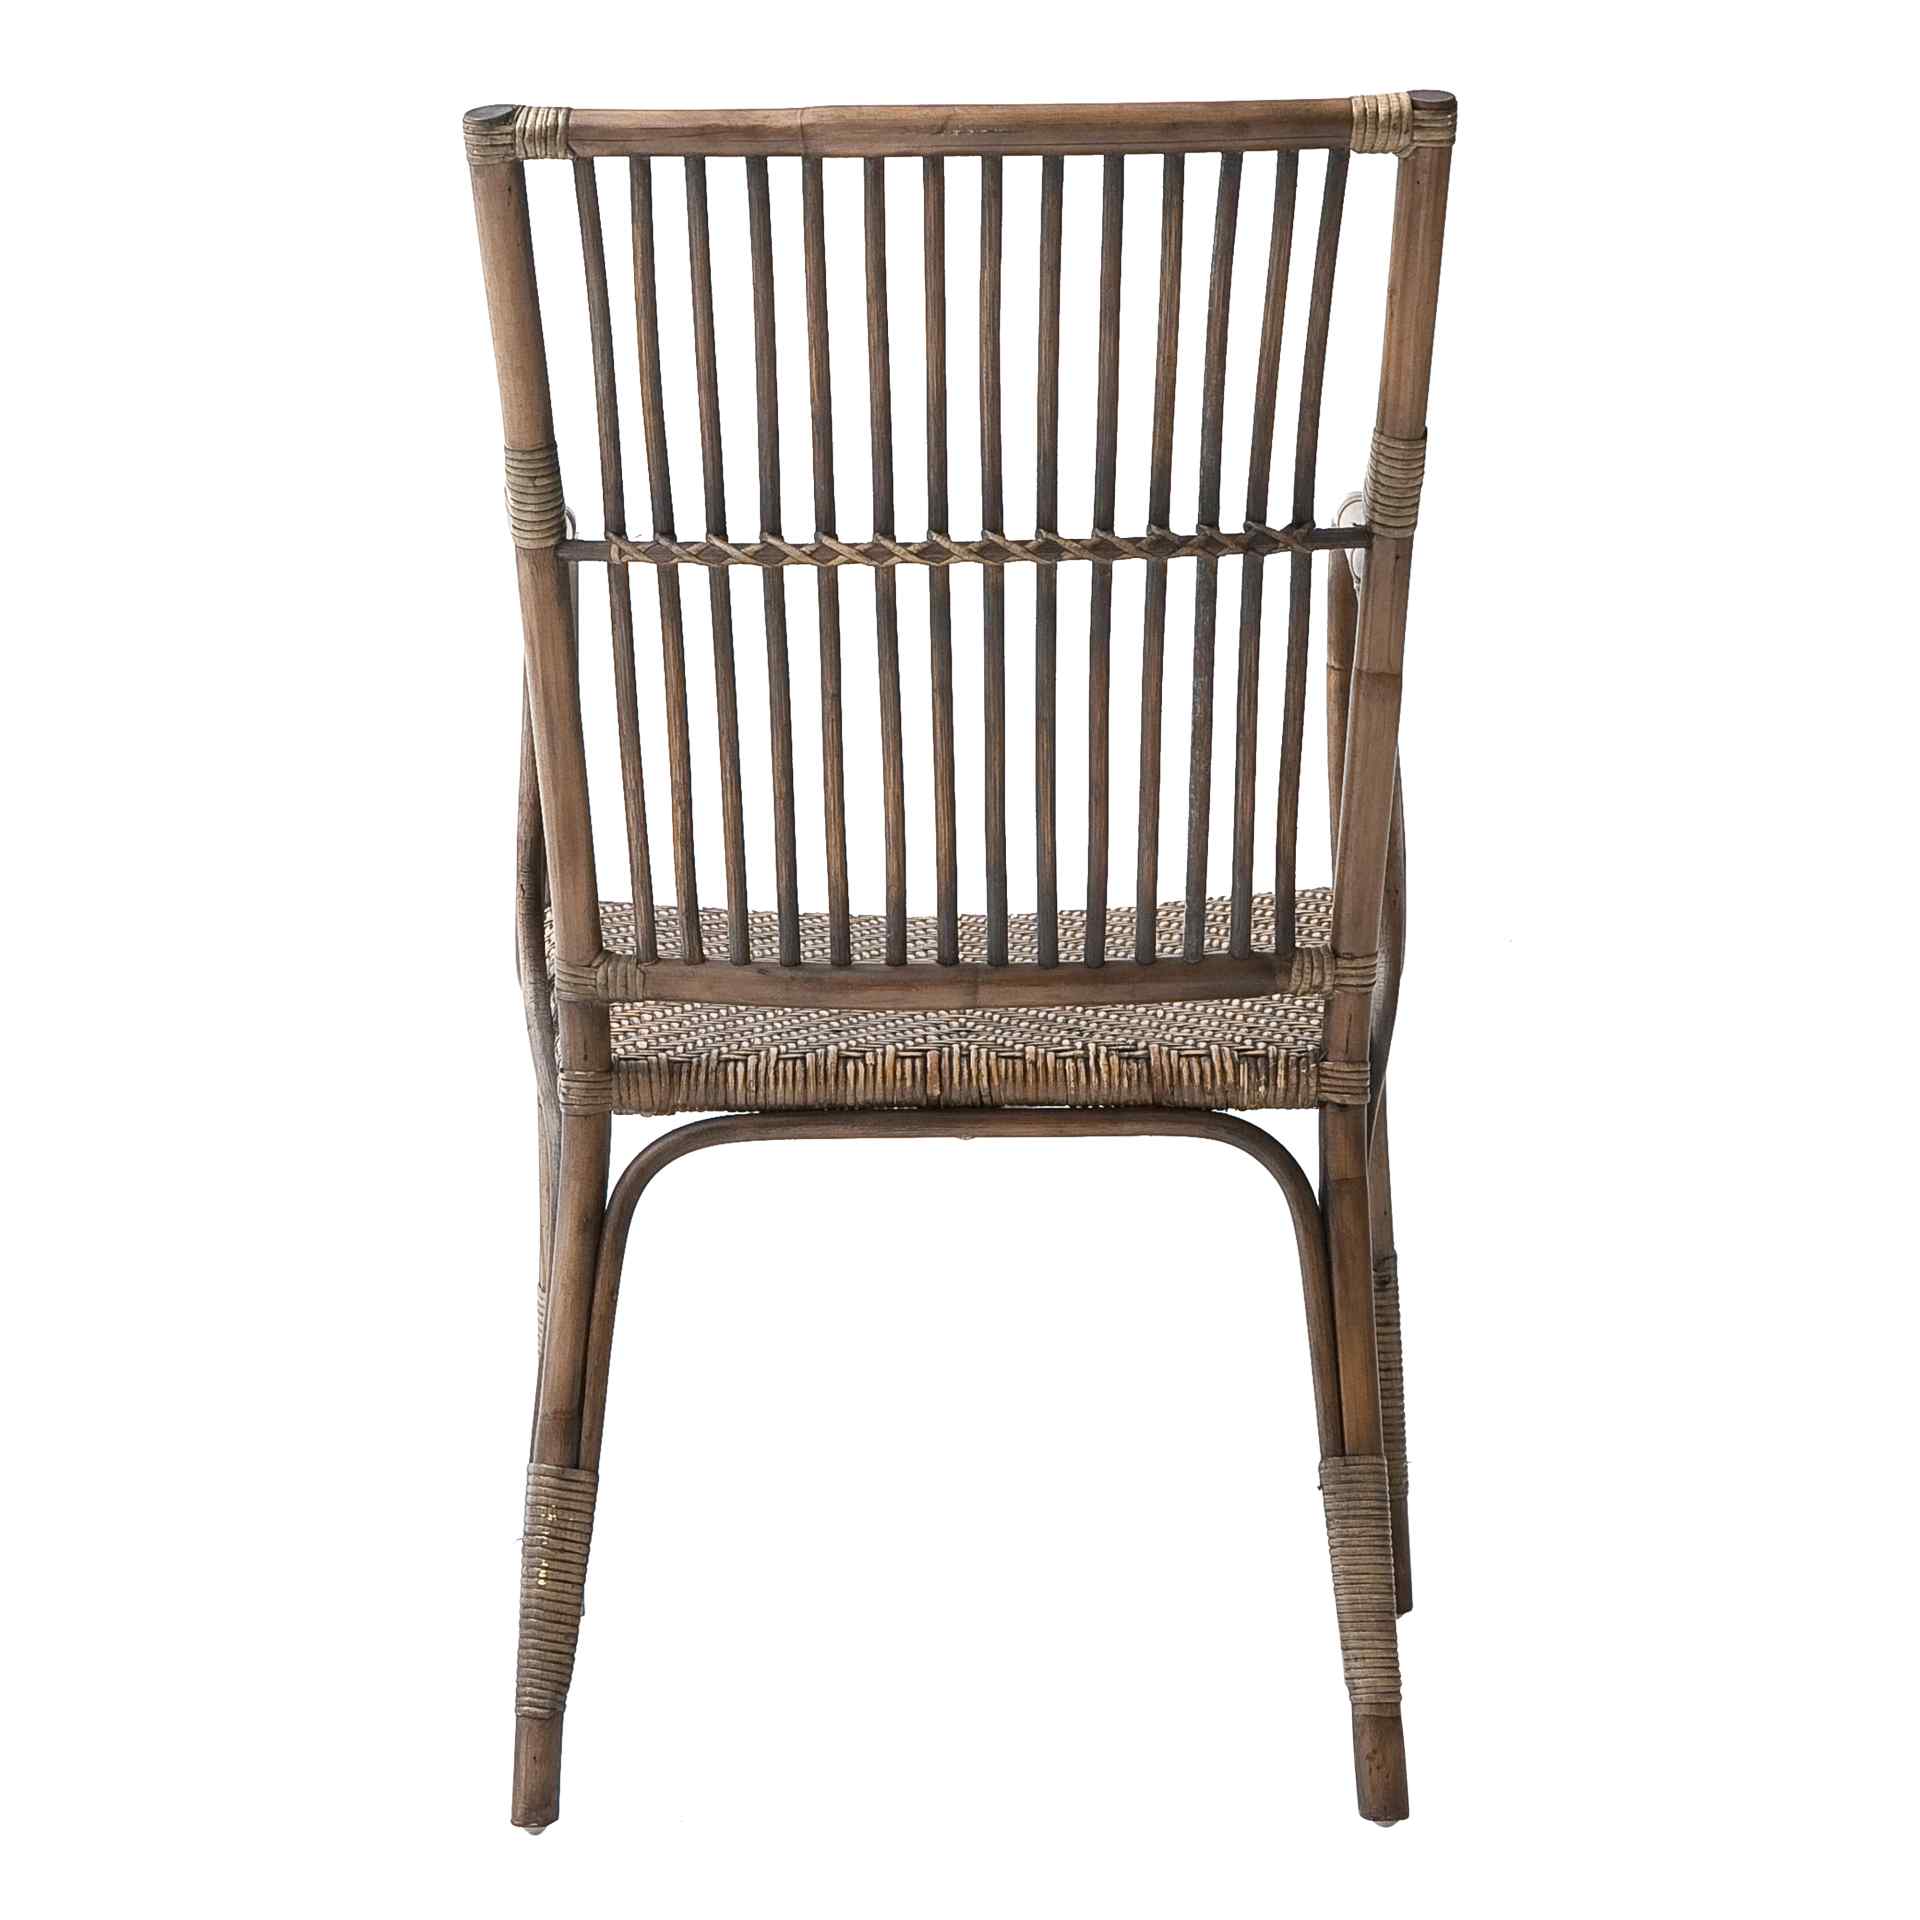 Der Armlehnstuhl Duke überzeugt mit seinem Landhaus Stil. Gefertigt wurde er aus Rattan, welches einen braunen Farbton besitzt. Der Stuhl verfügt über eine Armlehne und ist im 2er-Set erhältlich. Die Sitzhöhe beträgt beträgt 46 cm.